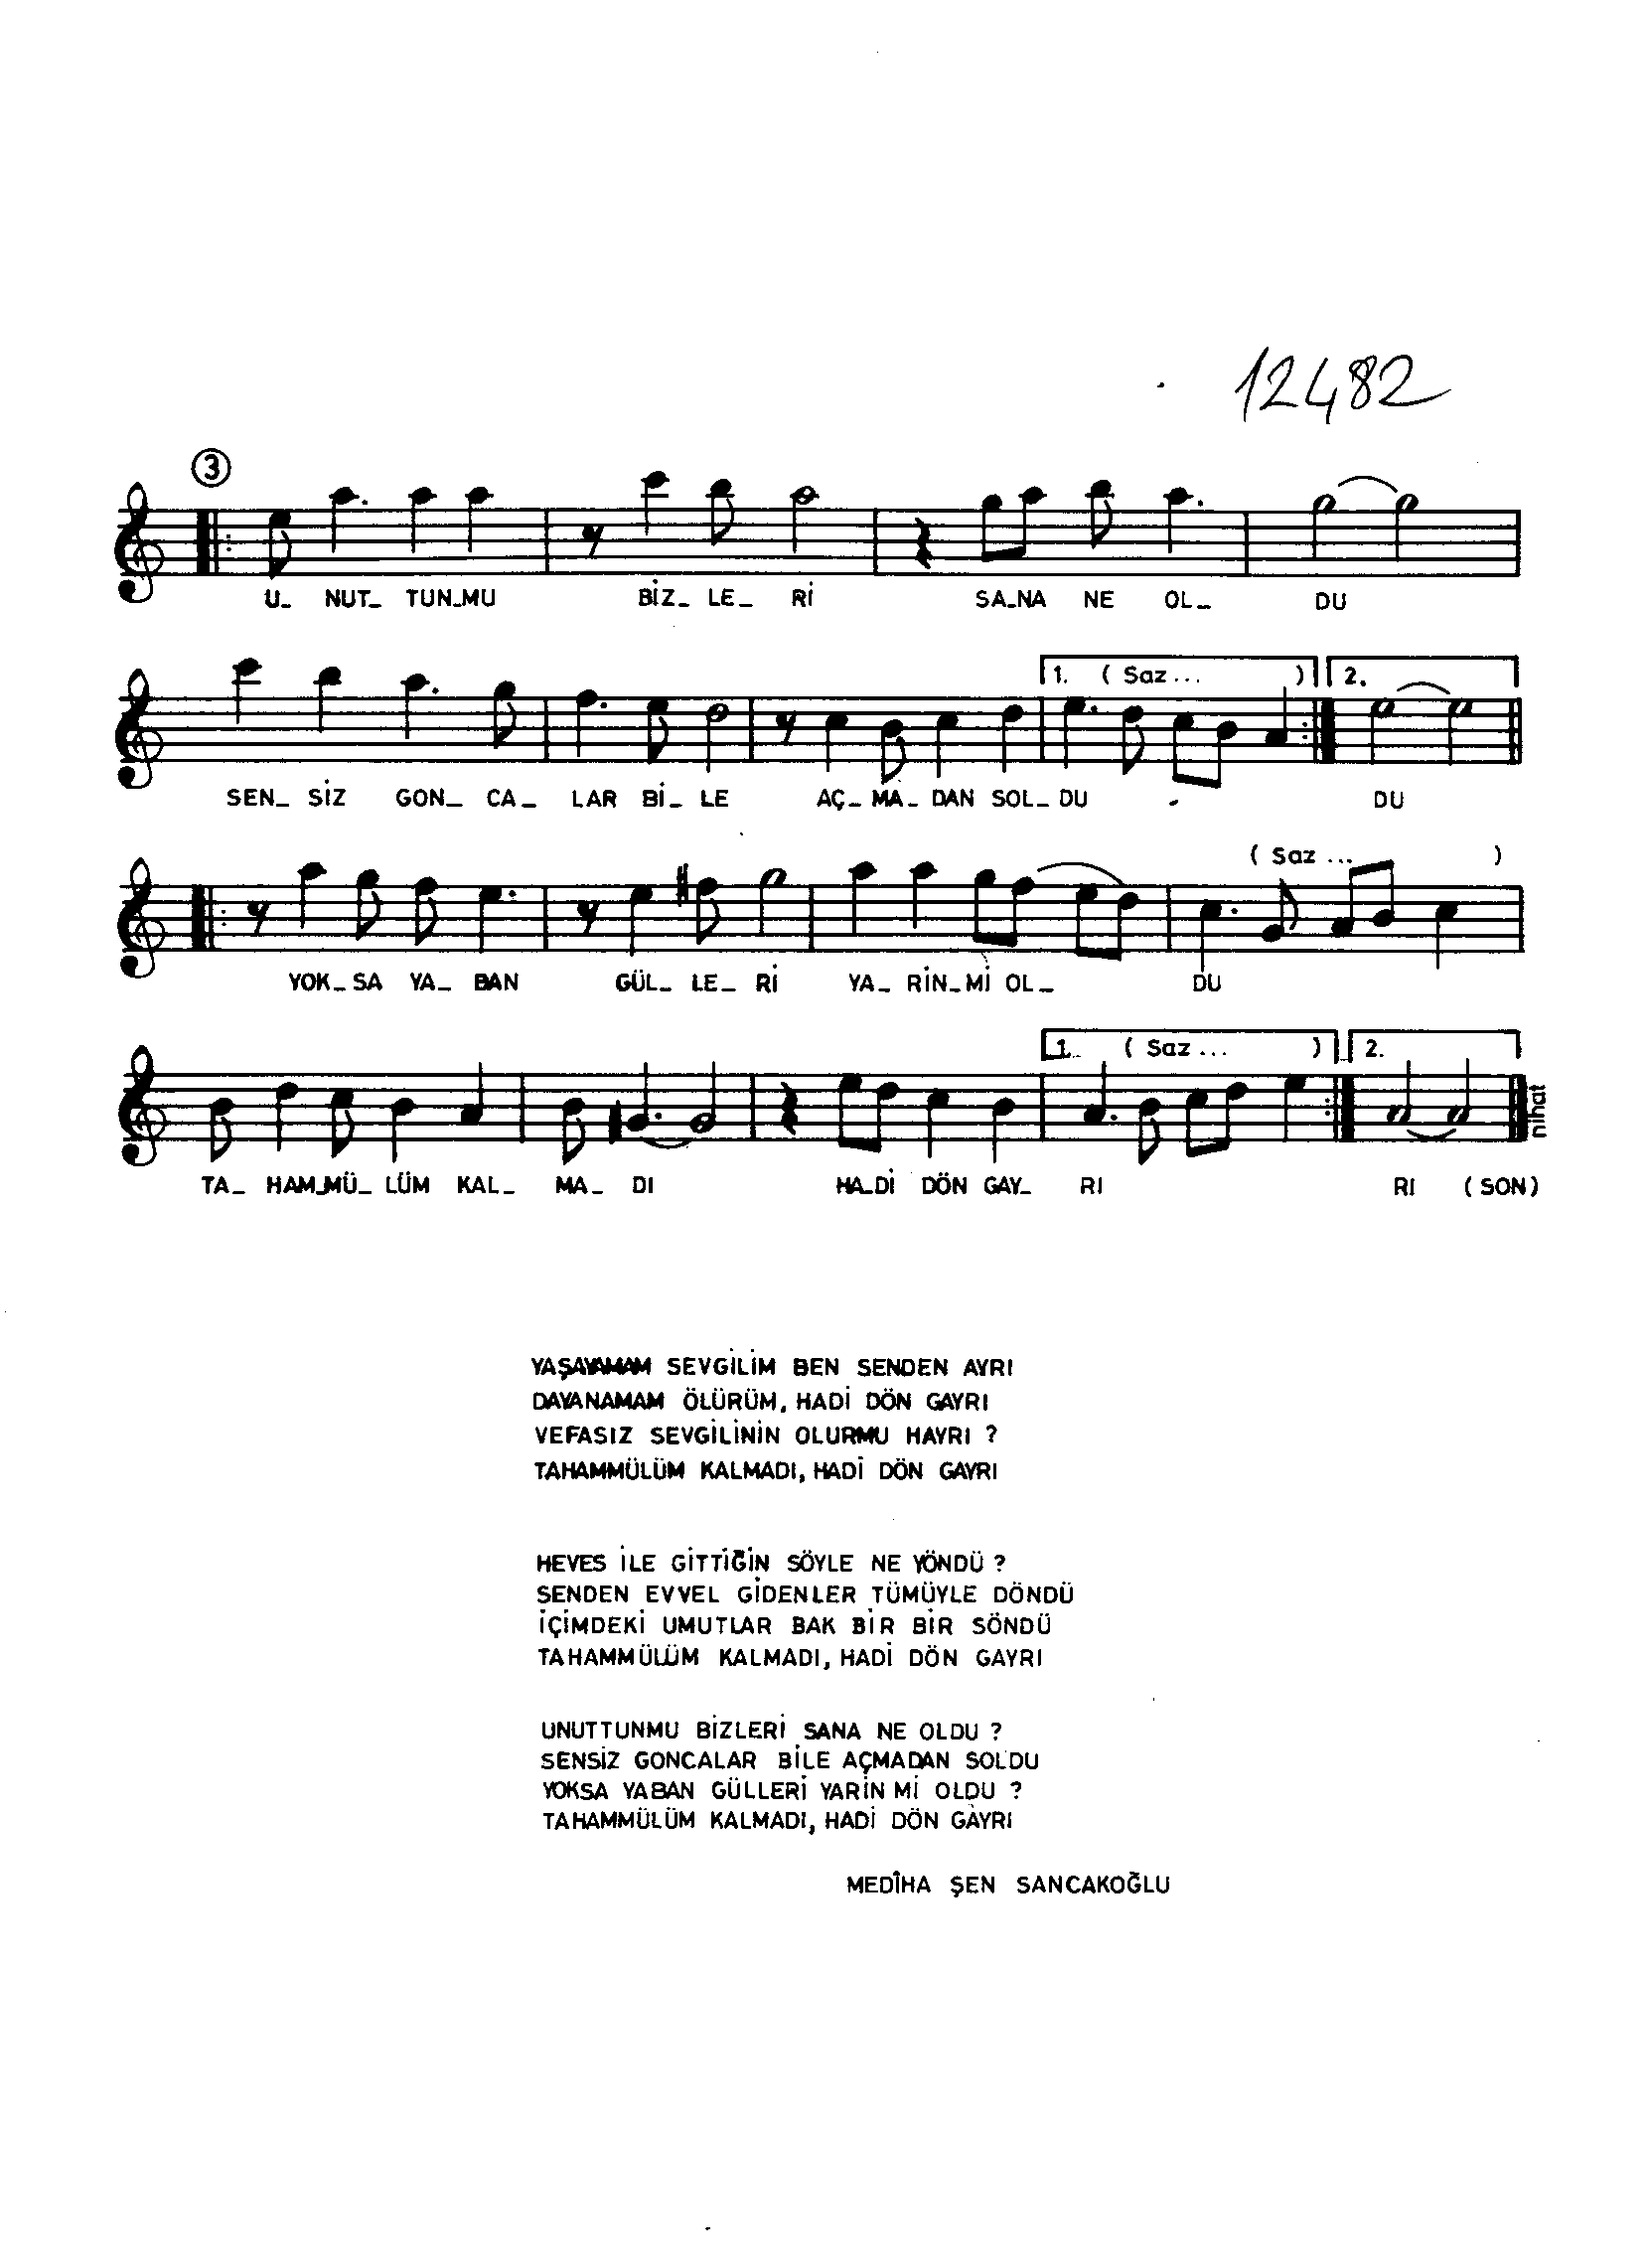 Bûselik - Şarkı - Mediha Şen Sancakoğlu - Sayfa 2